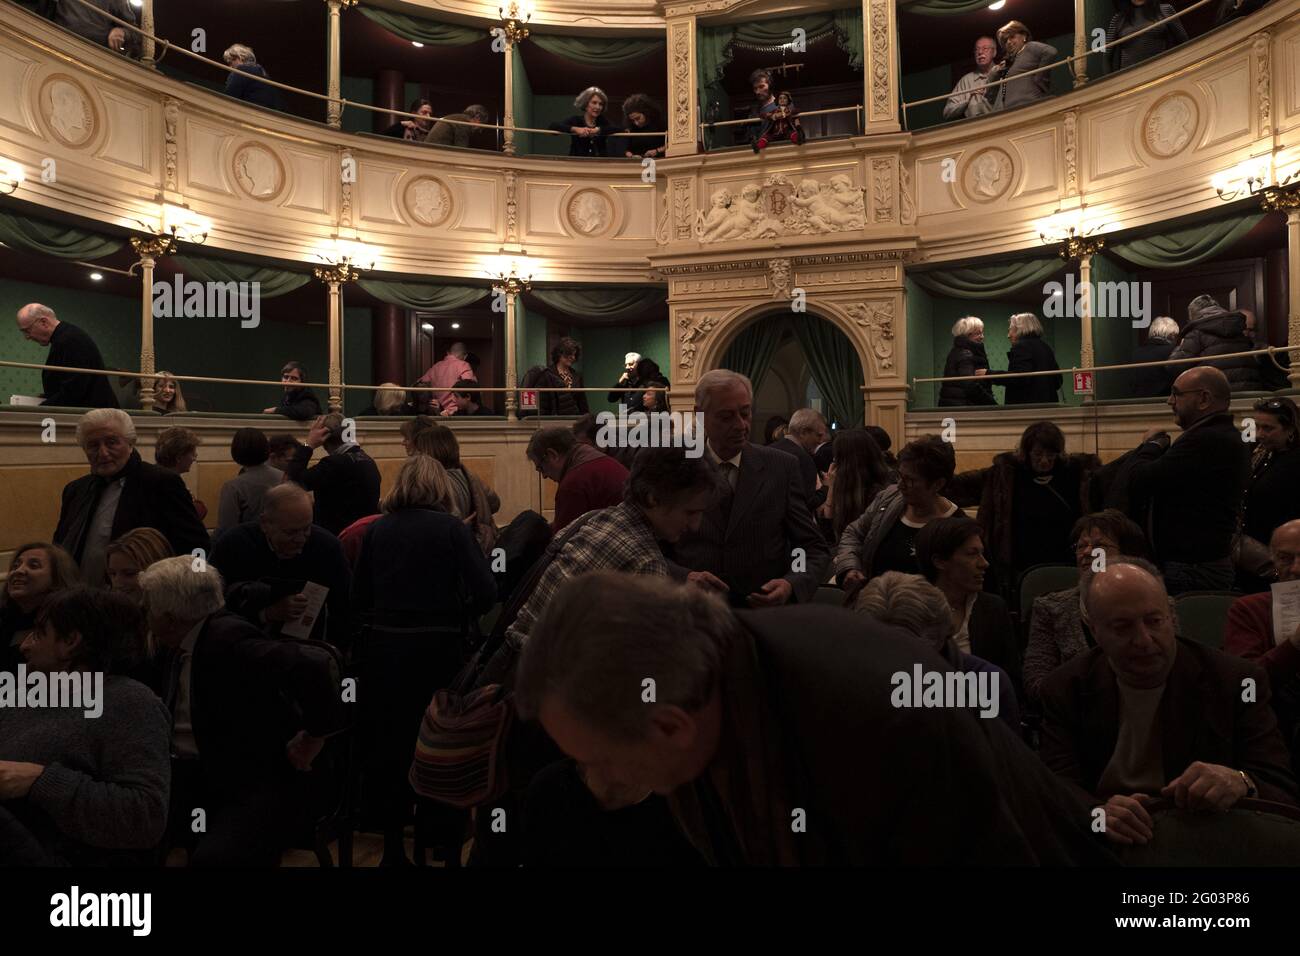 La gente partecipa a uno spettacolo teatrale di marionette colla della storica compagnia milanese, presso lo storico teatro Gerolamo fondato nel 1868, a Milano. Foto Stock